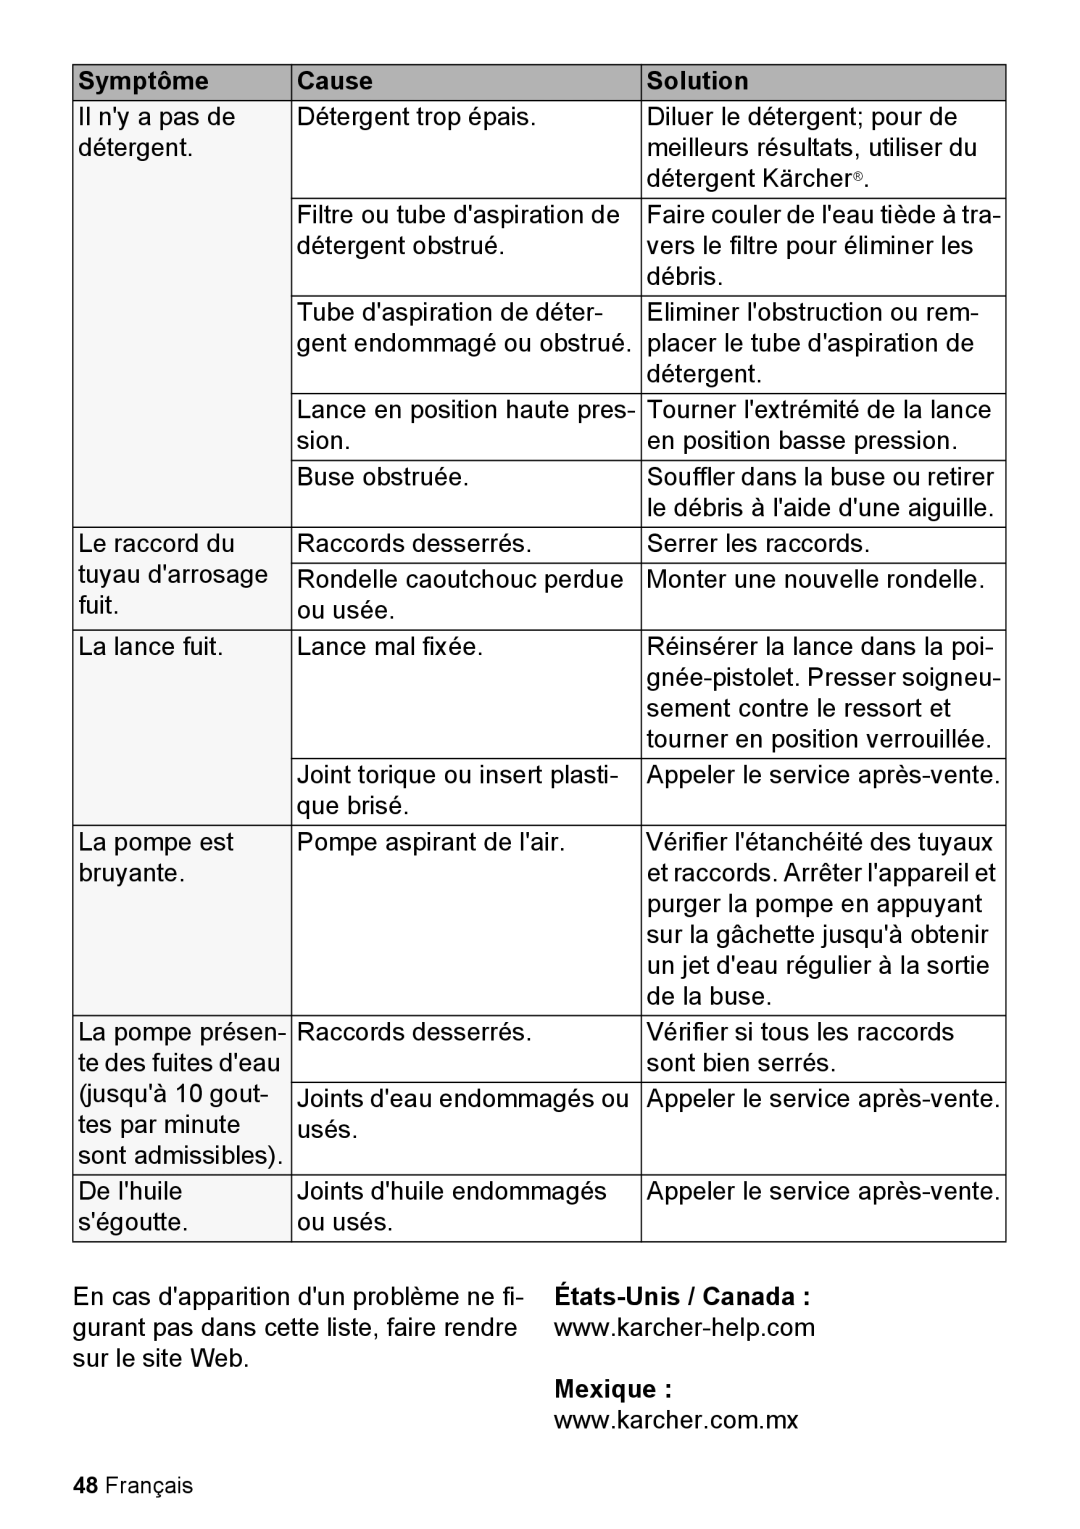 Karcher K 2.050 manual Symptôme, Cause, Solution, États-Unis / Canada, Mexique, Français 